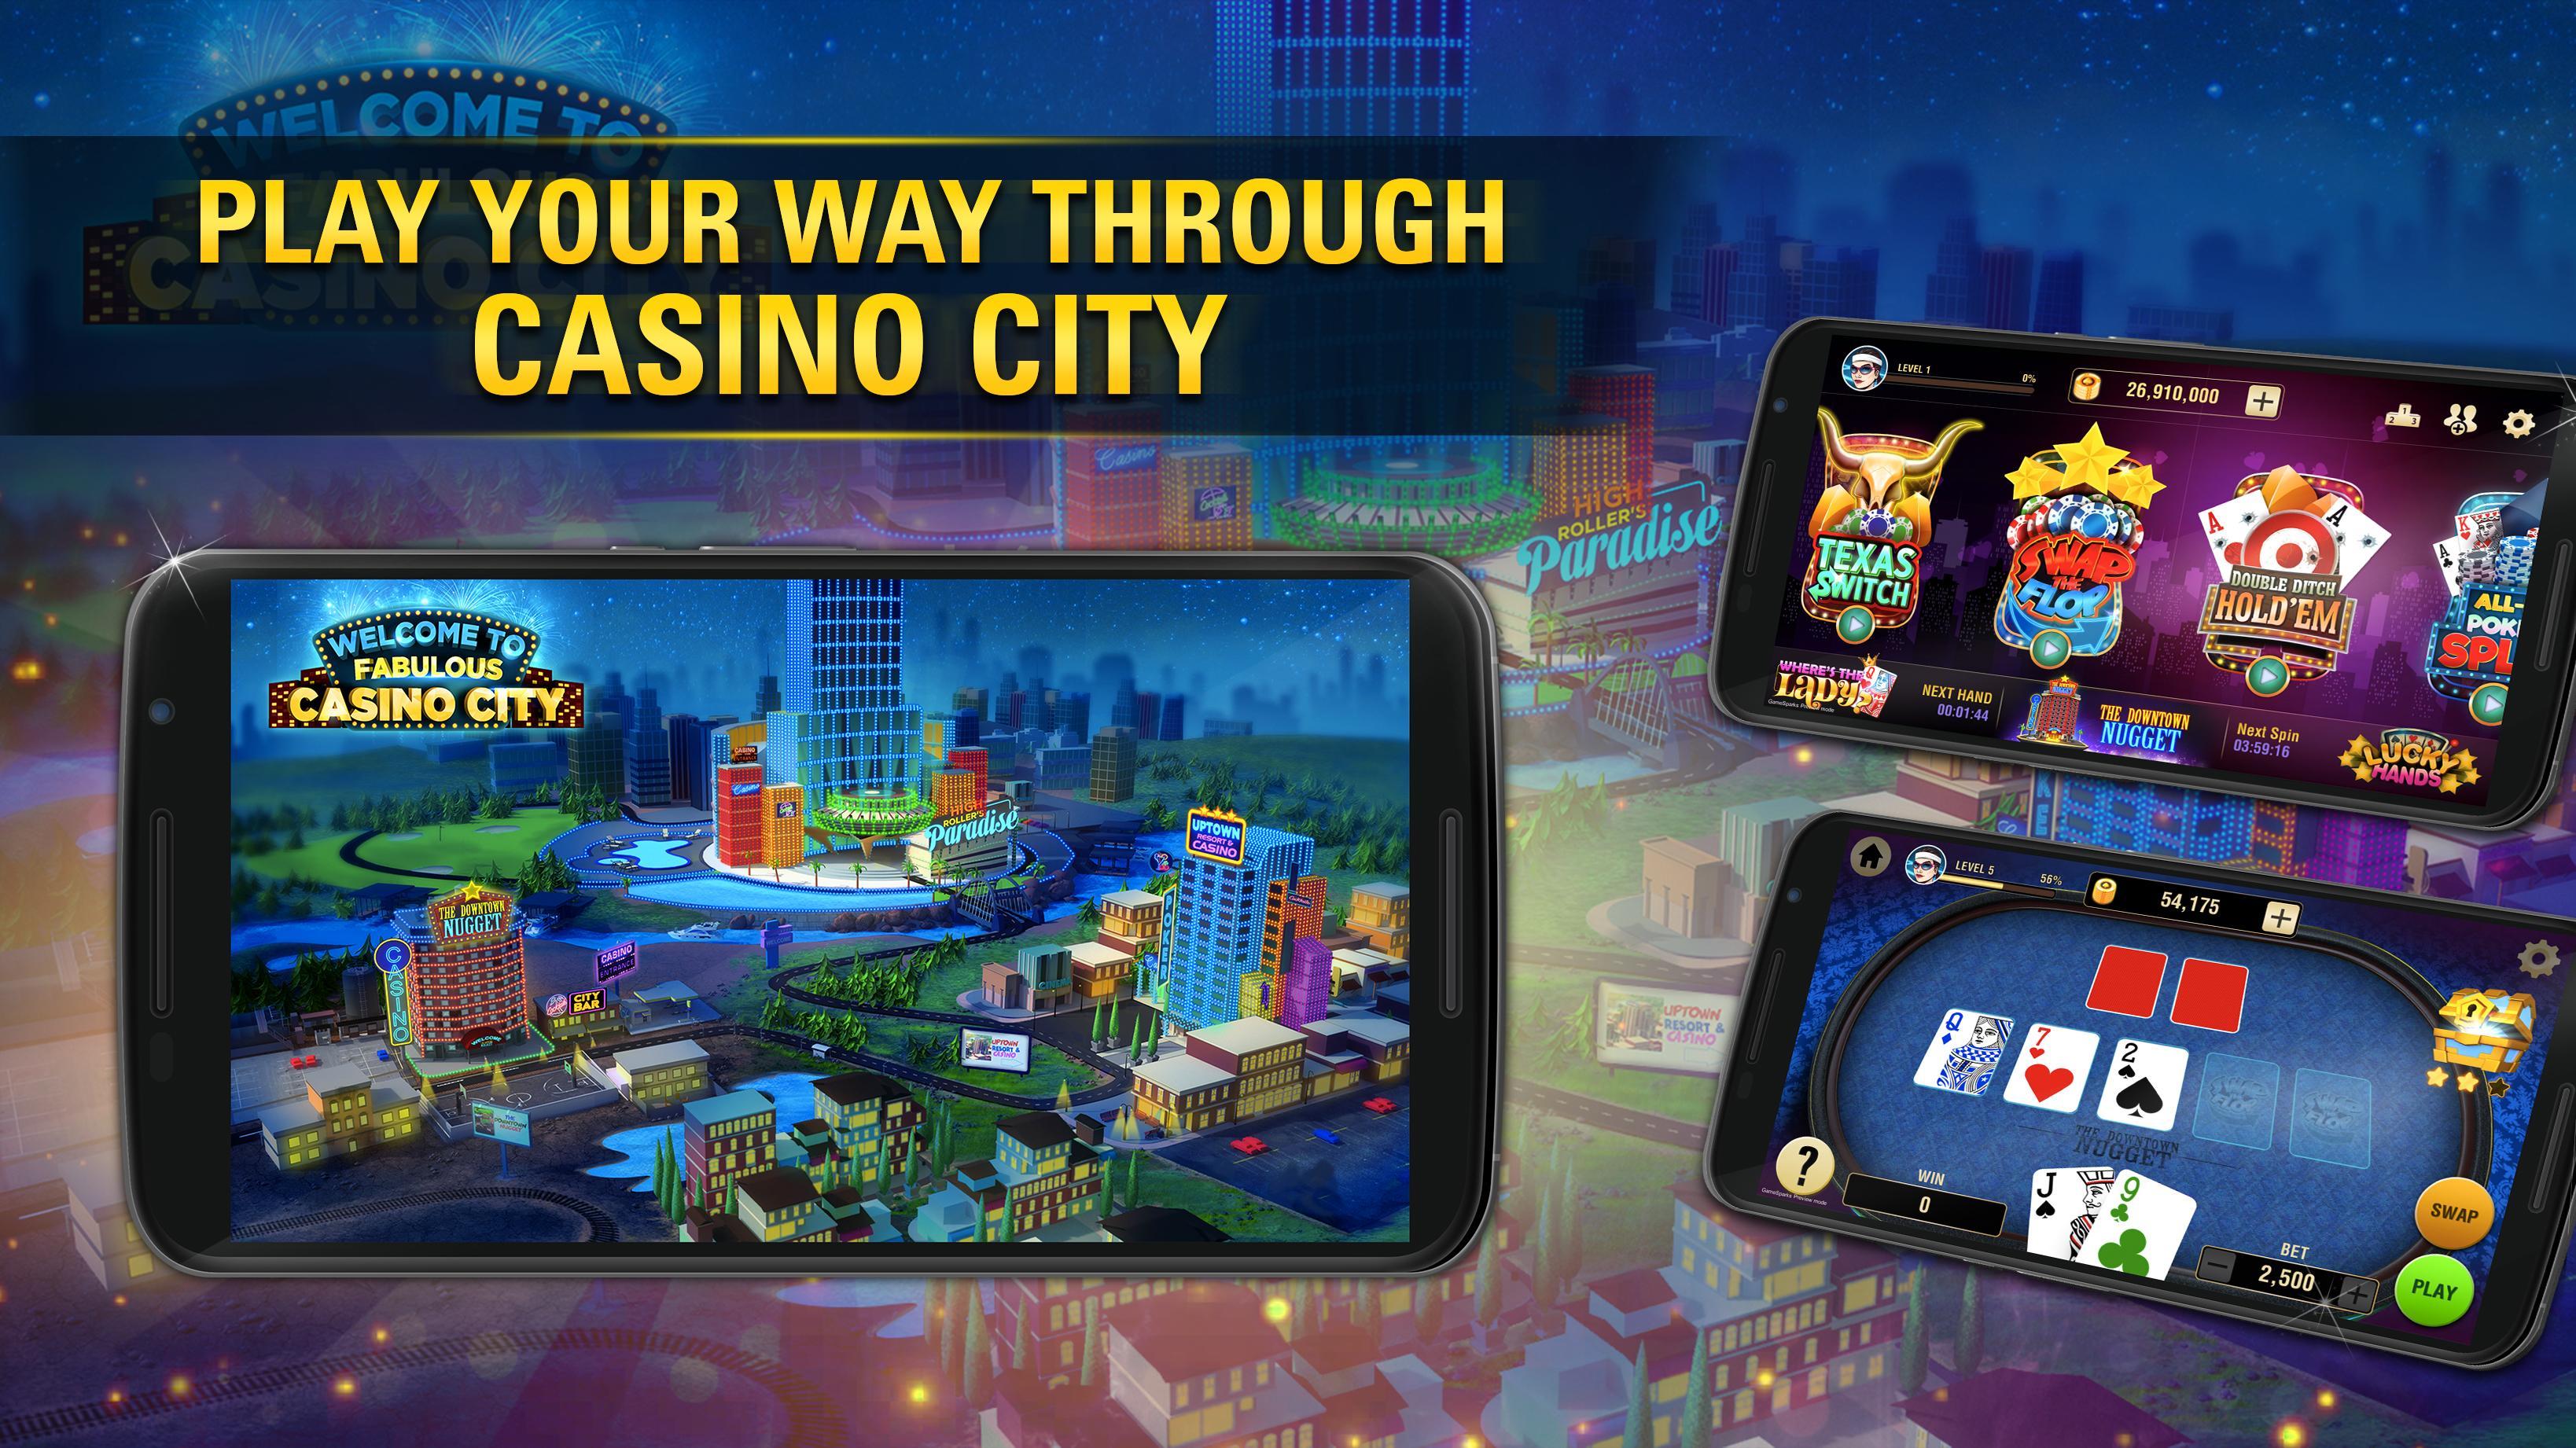 24kcasino casino скачать на андроид бесплатно joycasino скачать приложение https joycasino officials website